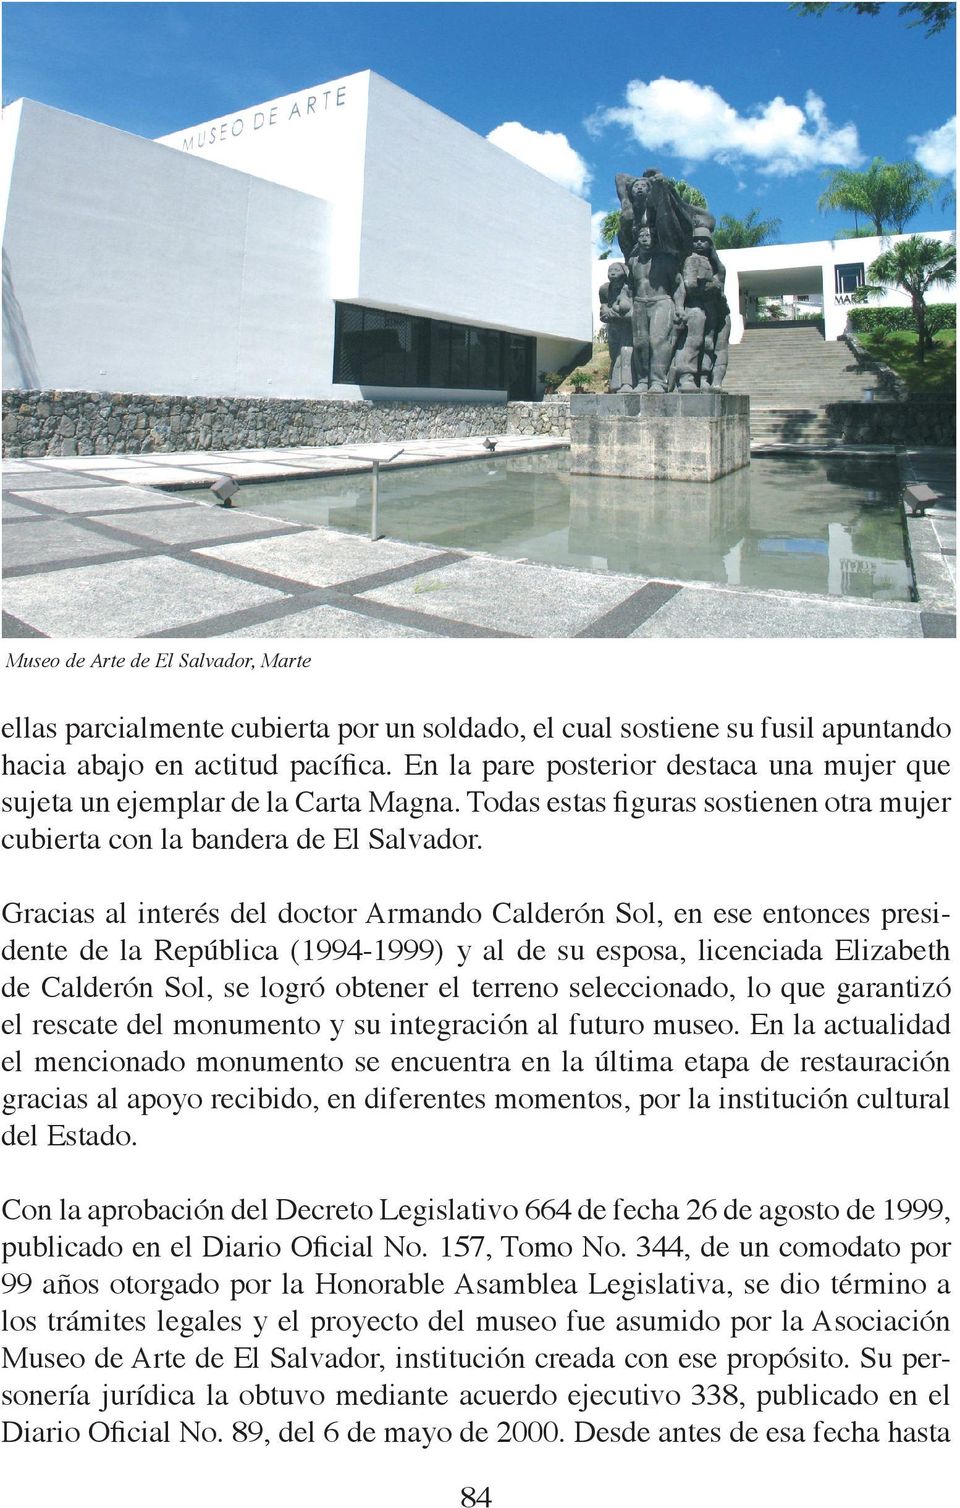 Gracias al interés del doctor Armando Calderón Sol, en ese entonces presidente de la República (1994-1999) y al de su esposa, licenciada Elizabeth de Calderón Sol, se logró obtener el terreno